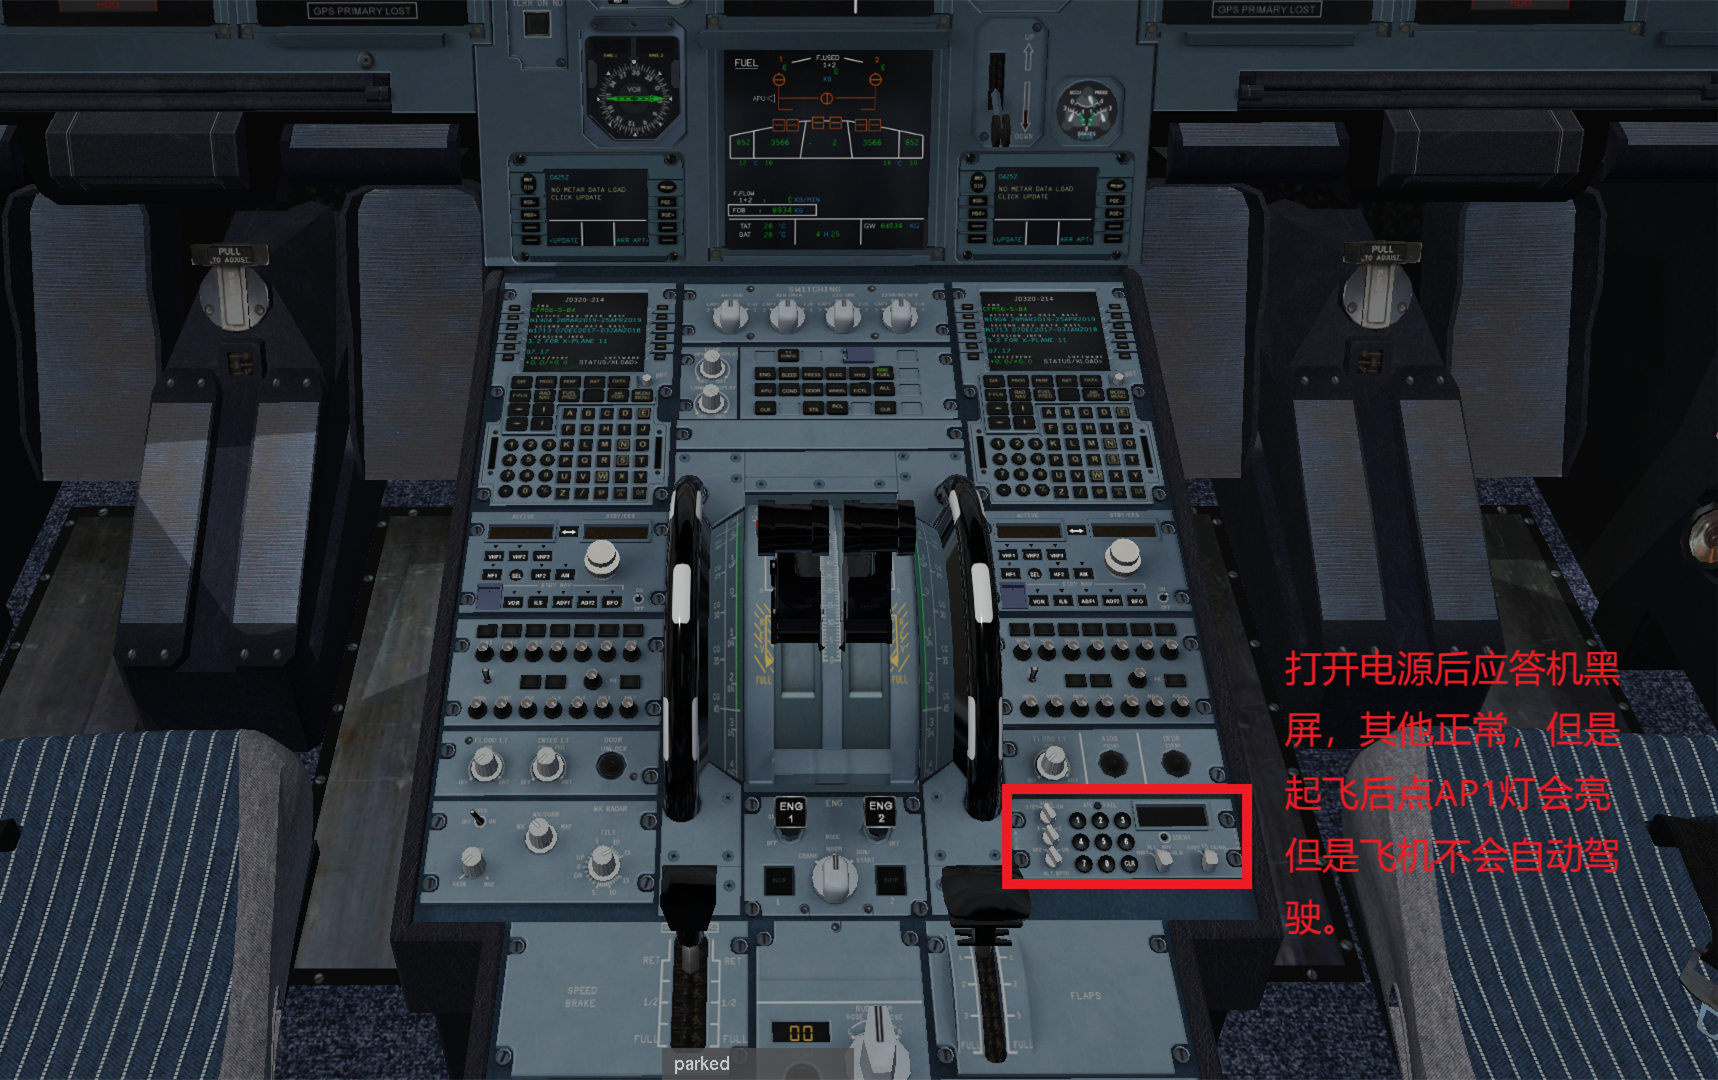 JARD A320  不能导航应答机黑屏的解决办法-1434 